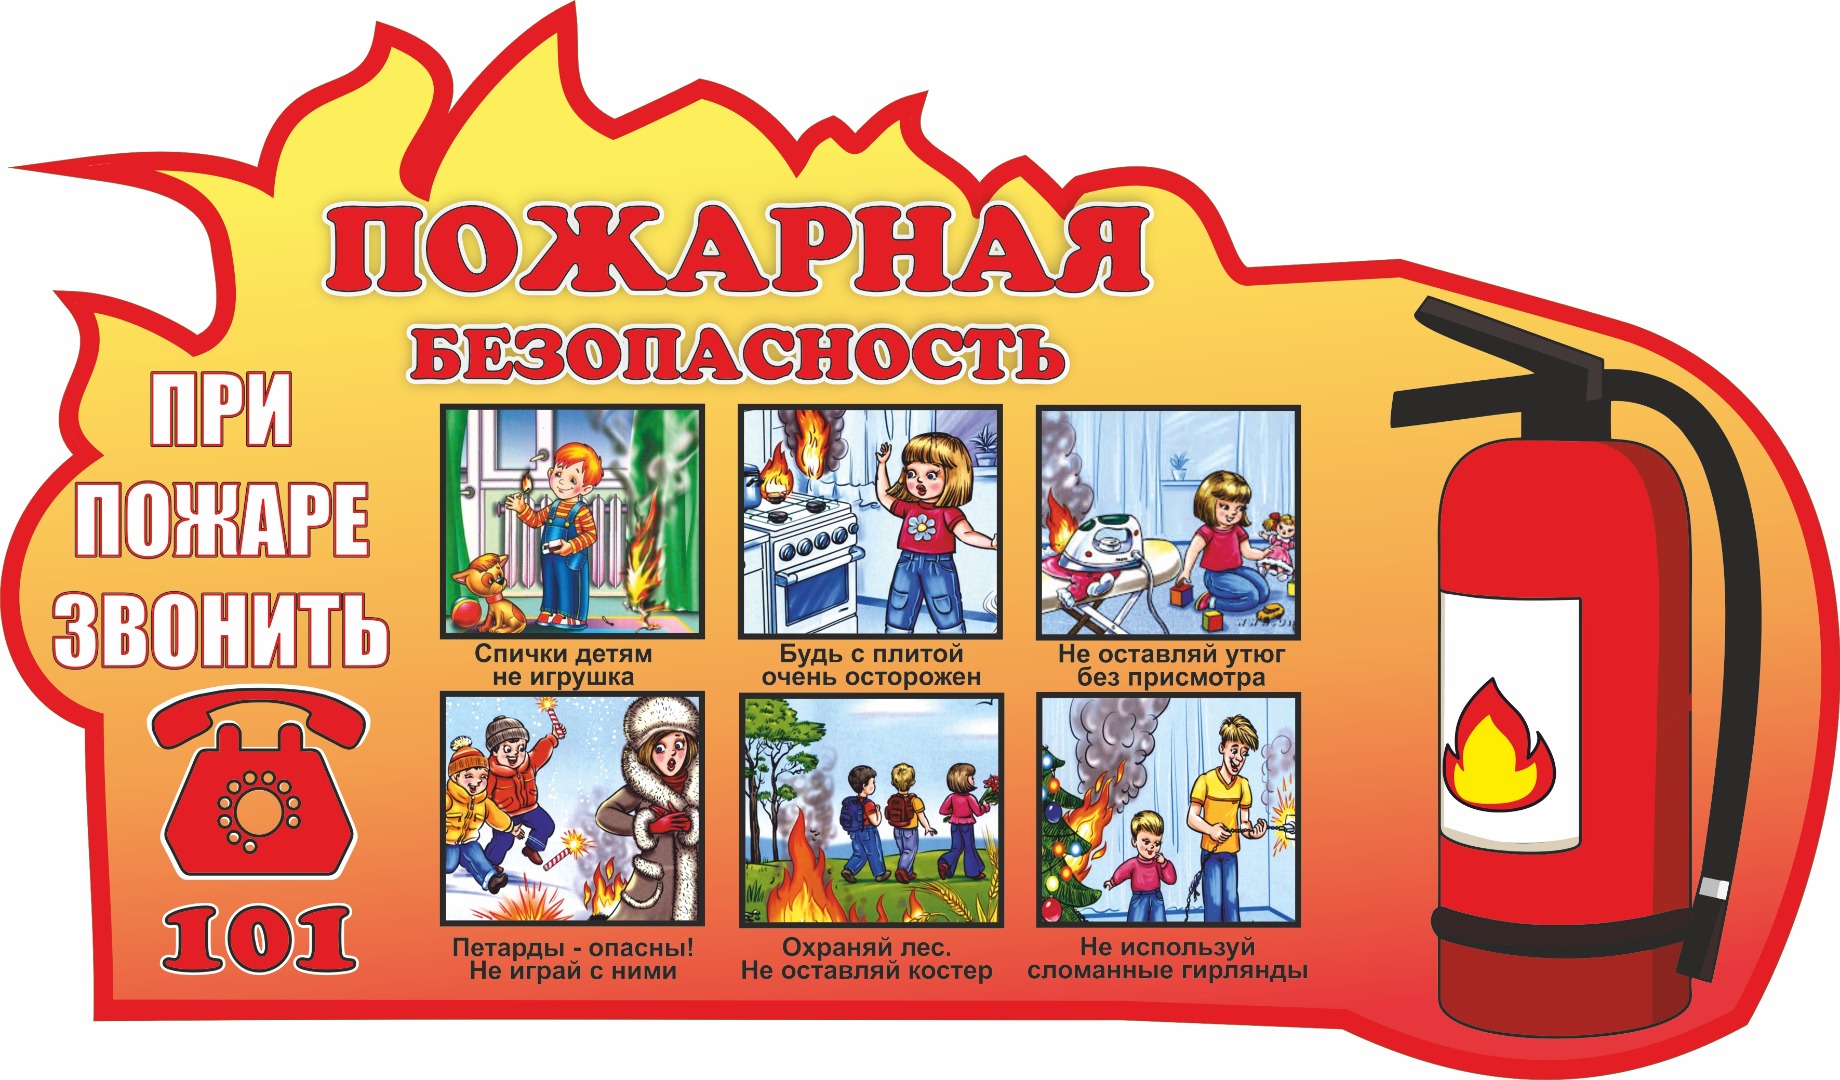 Сценарий пожарные в детском саду. Пожар няябезопасноссть. Пожарная безопастность. Пожарная безопасность для детей.